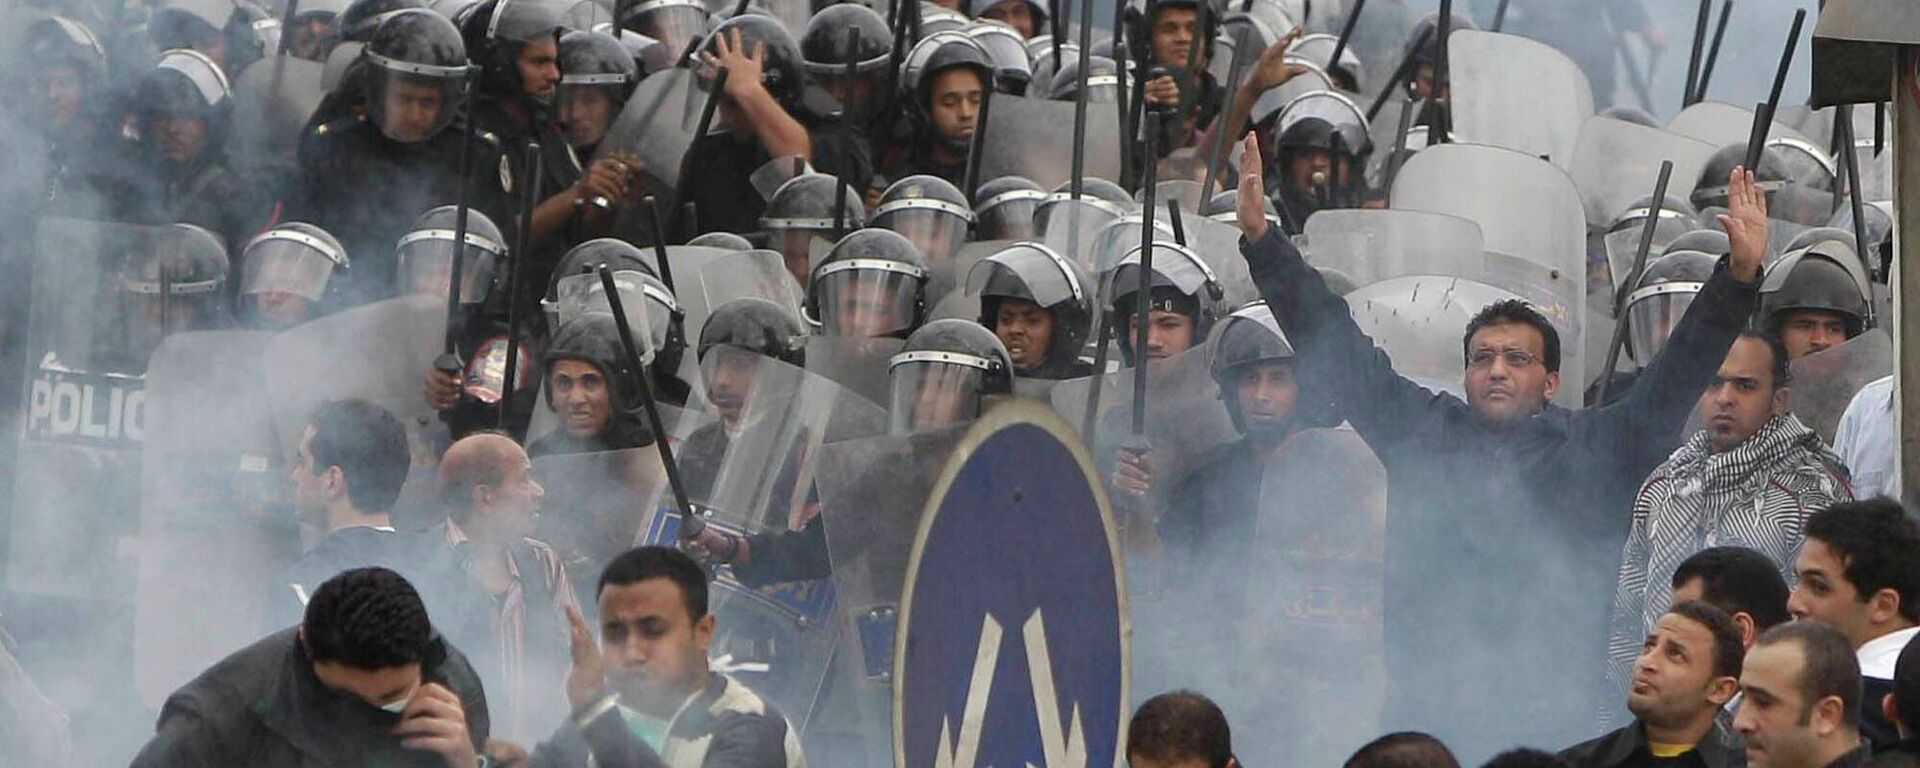 Protestas contra el presidente Hosni Mubarak en El Cairo, Egipto, el 28 de enero de 2011 - Sputnik Mundo, 1920, 11.04.2022